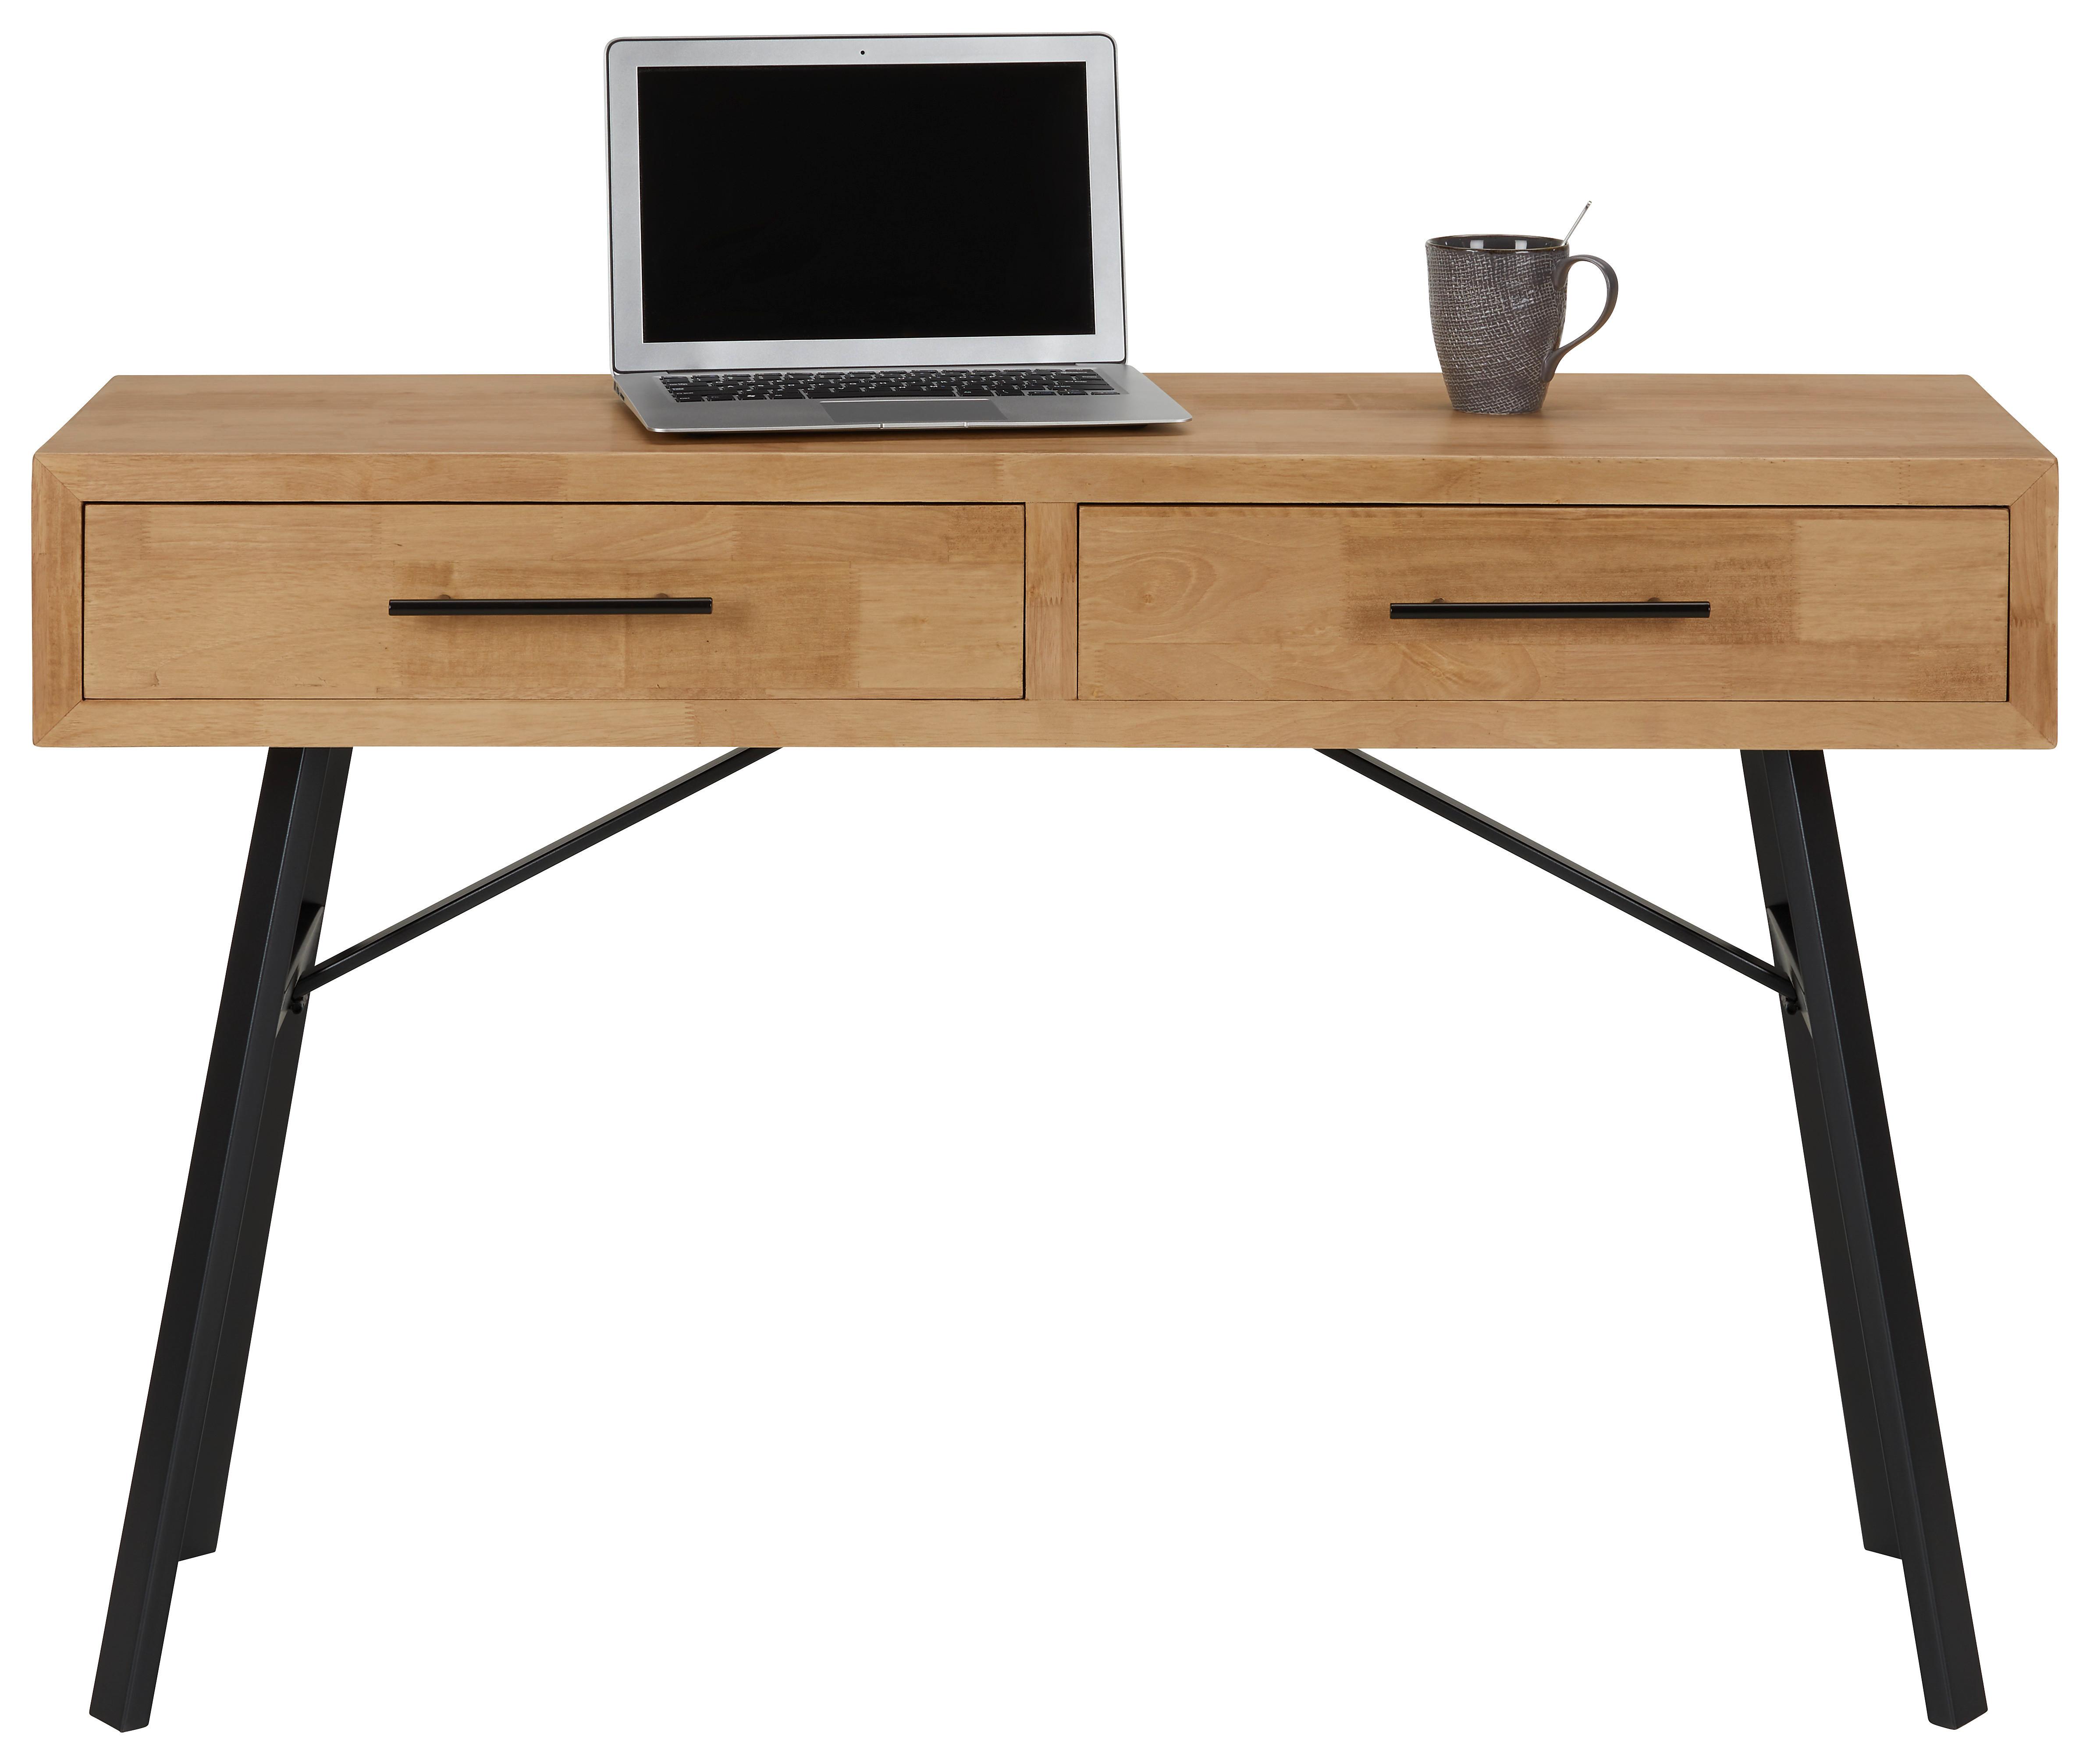 Schreibtisch aus Echtholz - Naturfarben/Grau, Lifestyle, Holz/Holzwerkstoff (120/78/40cm) - Premium Living